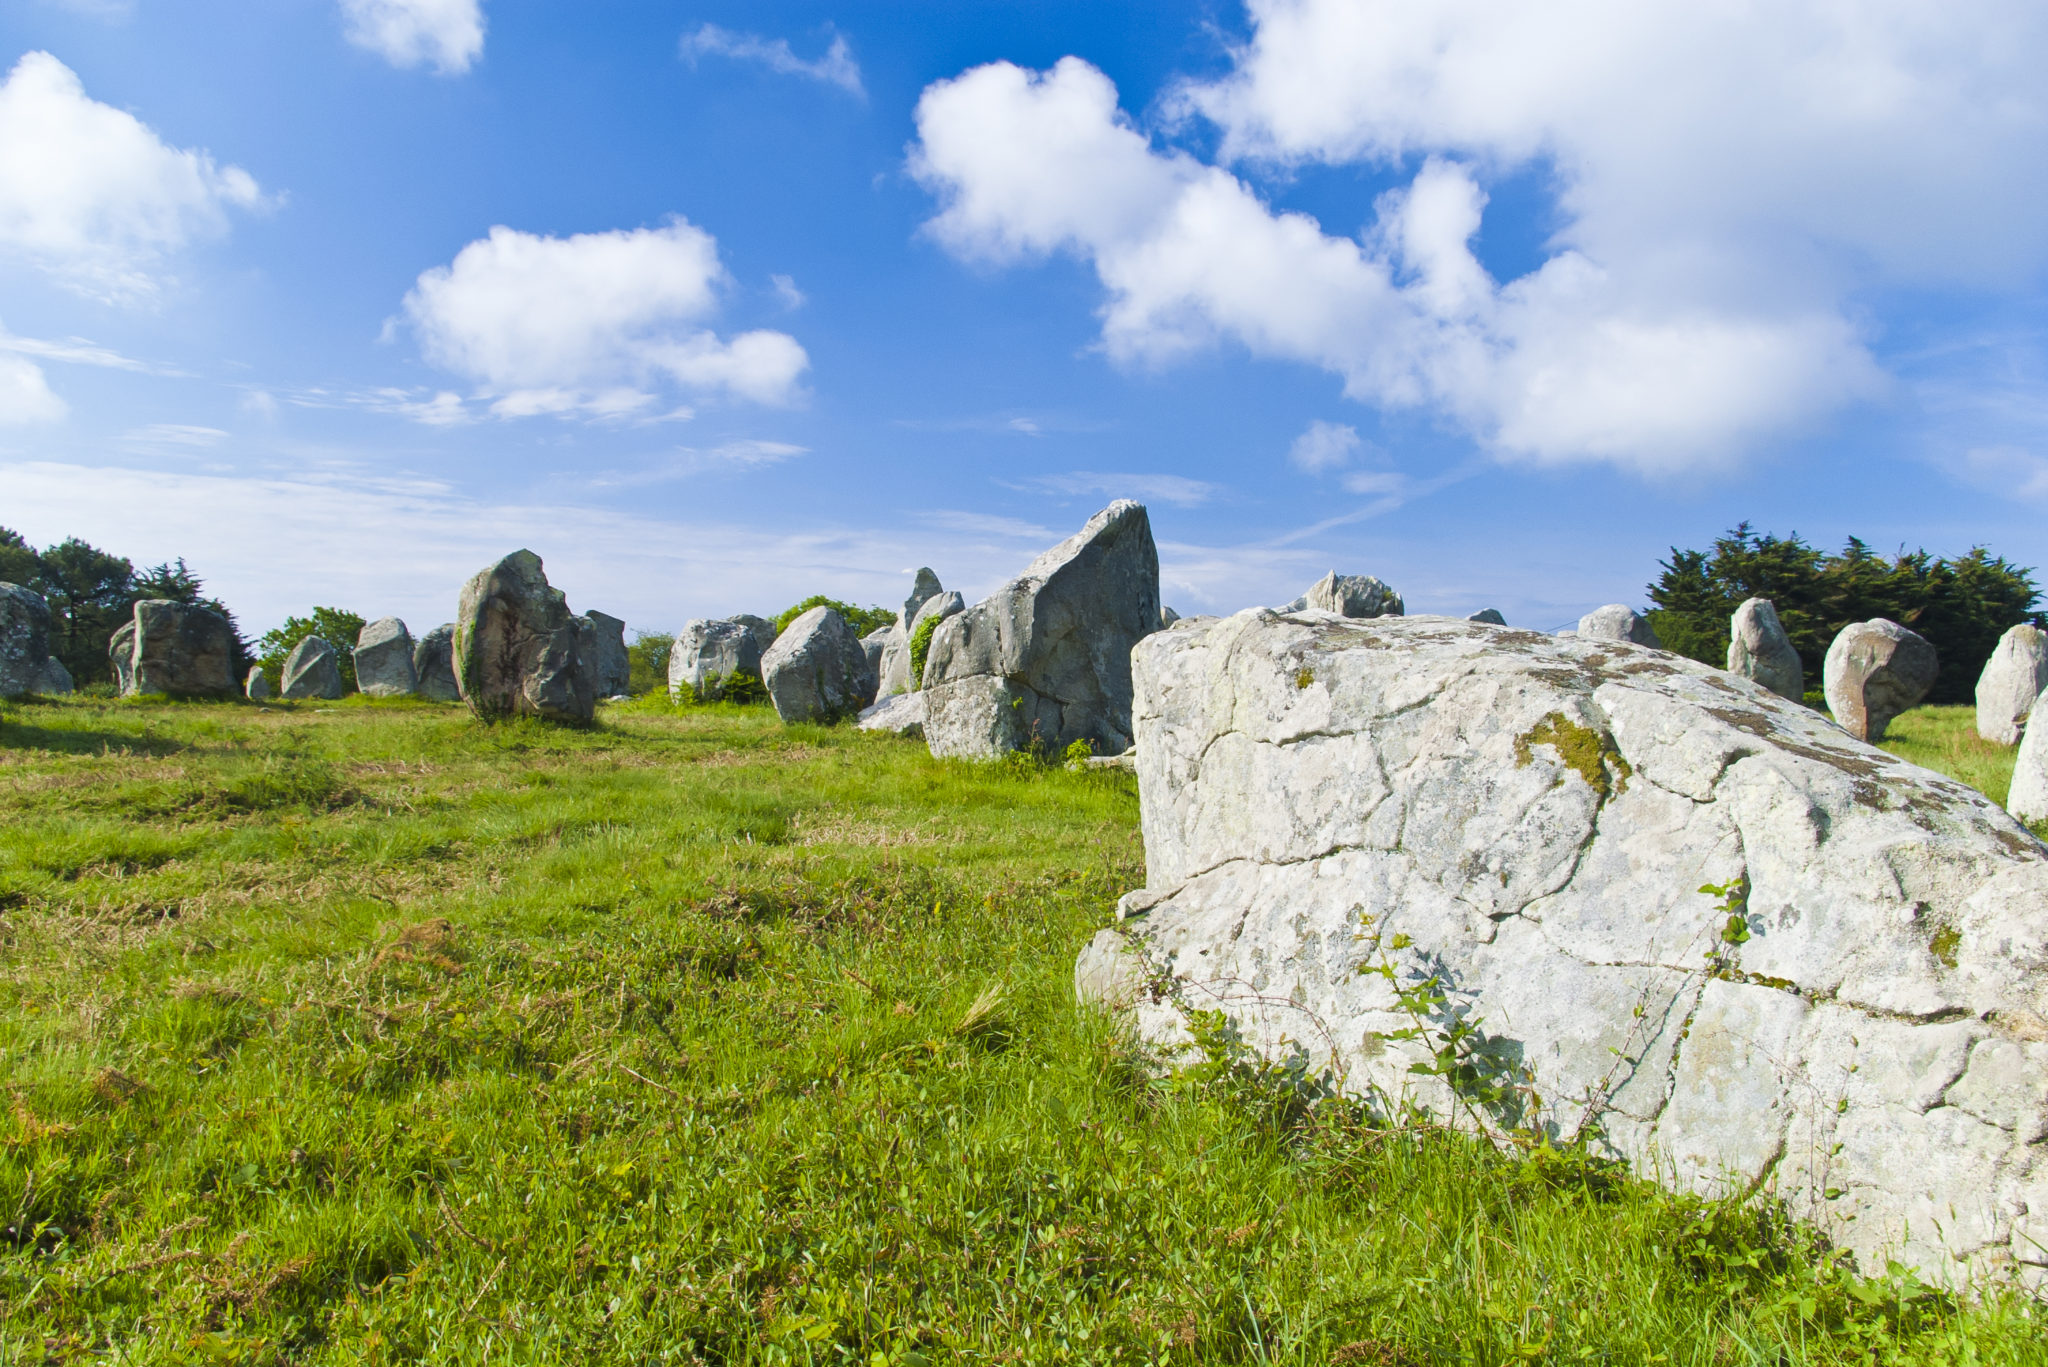 Uniek gevormde rotsformaties gelegen in een groen grasveld met een helderblauwe lucht.